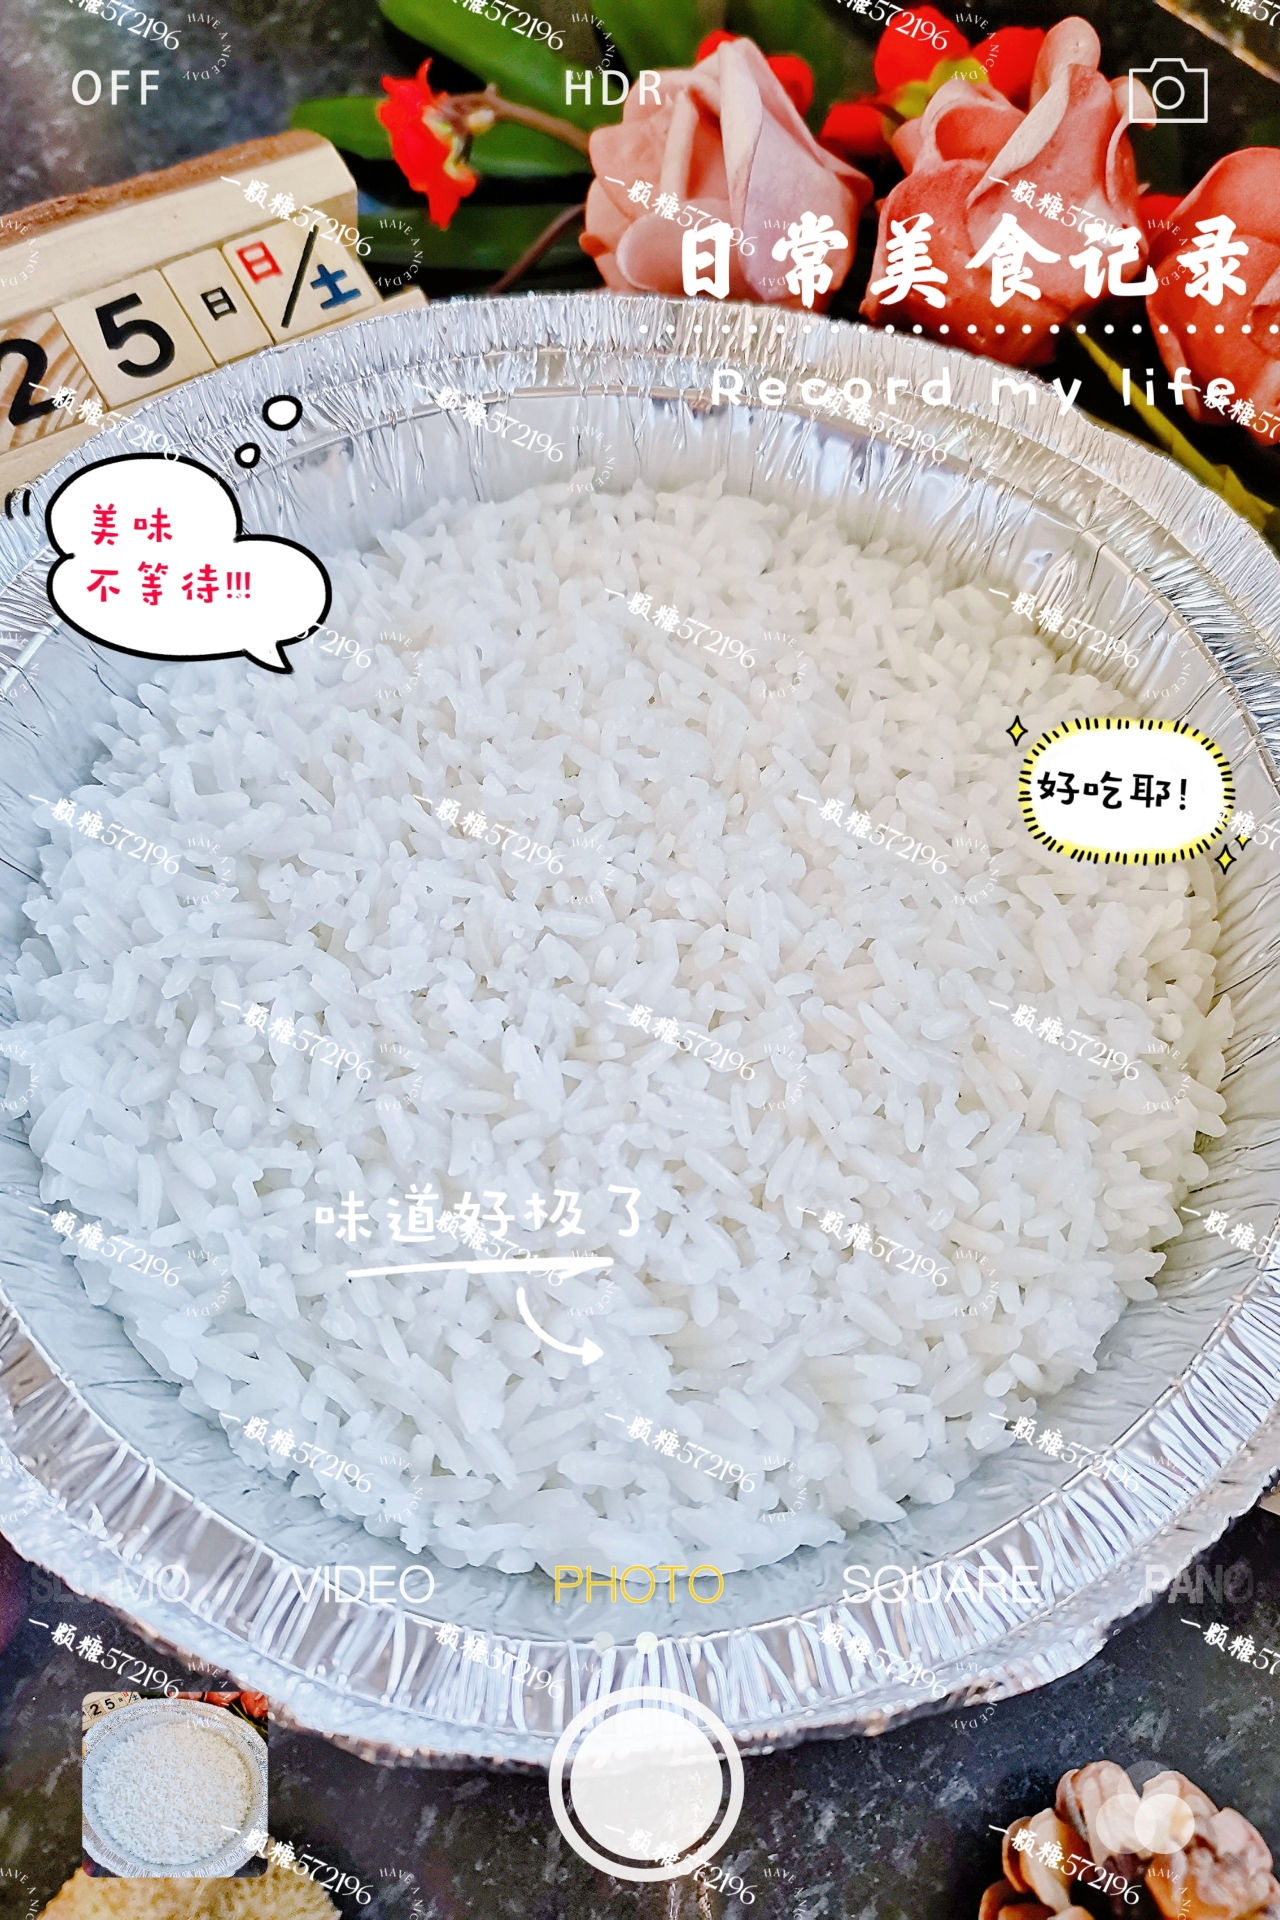 空气炸锅也能༄「蒸白米饭🍚」༄✌️✌️✌️的做法